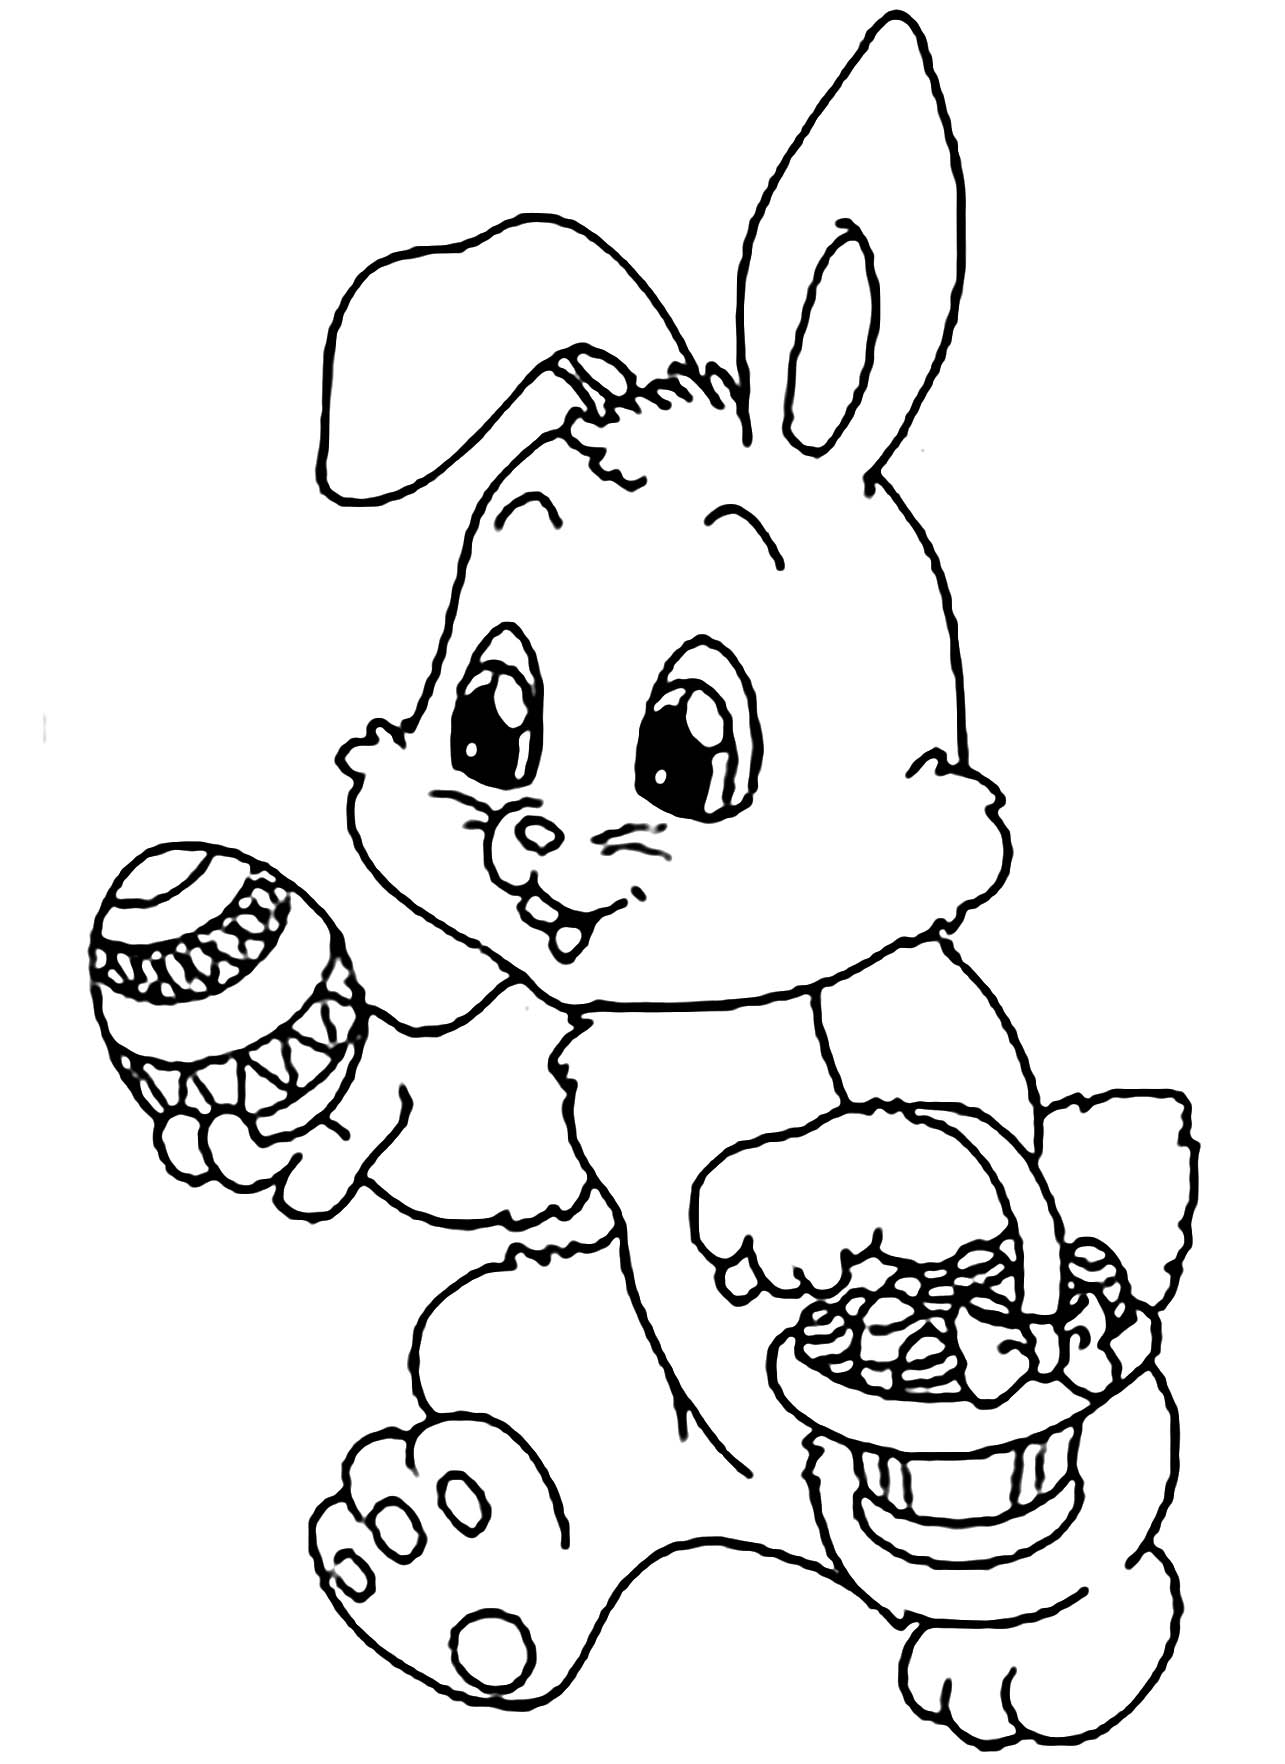 ¡La cesta de este pequeño Conejo está llena de huevos!